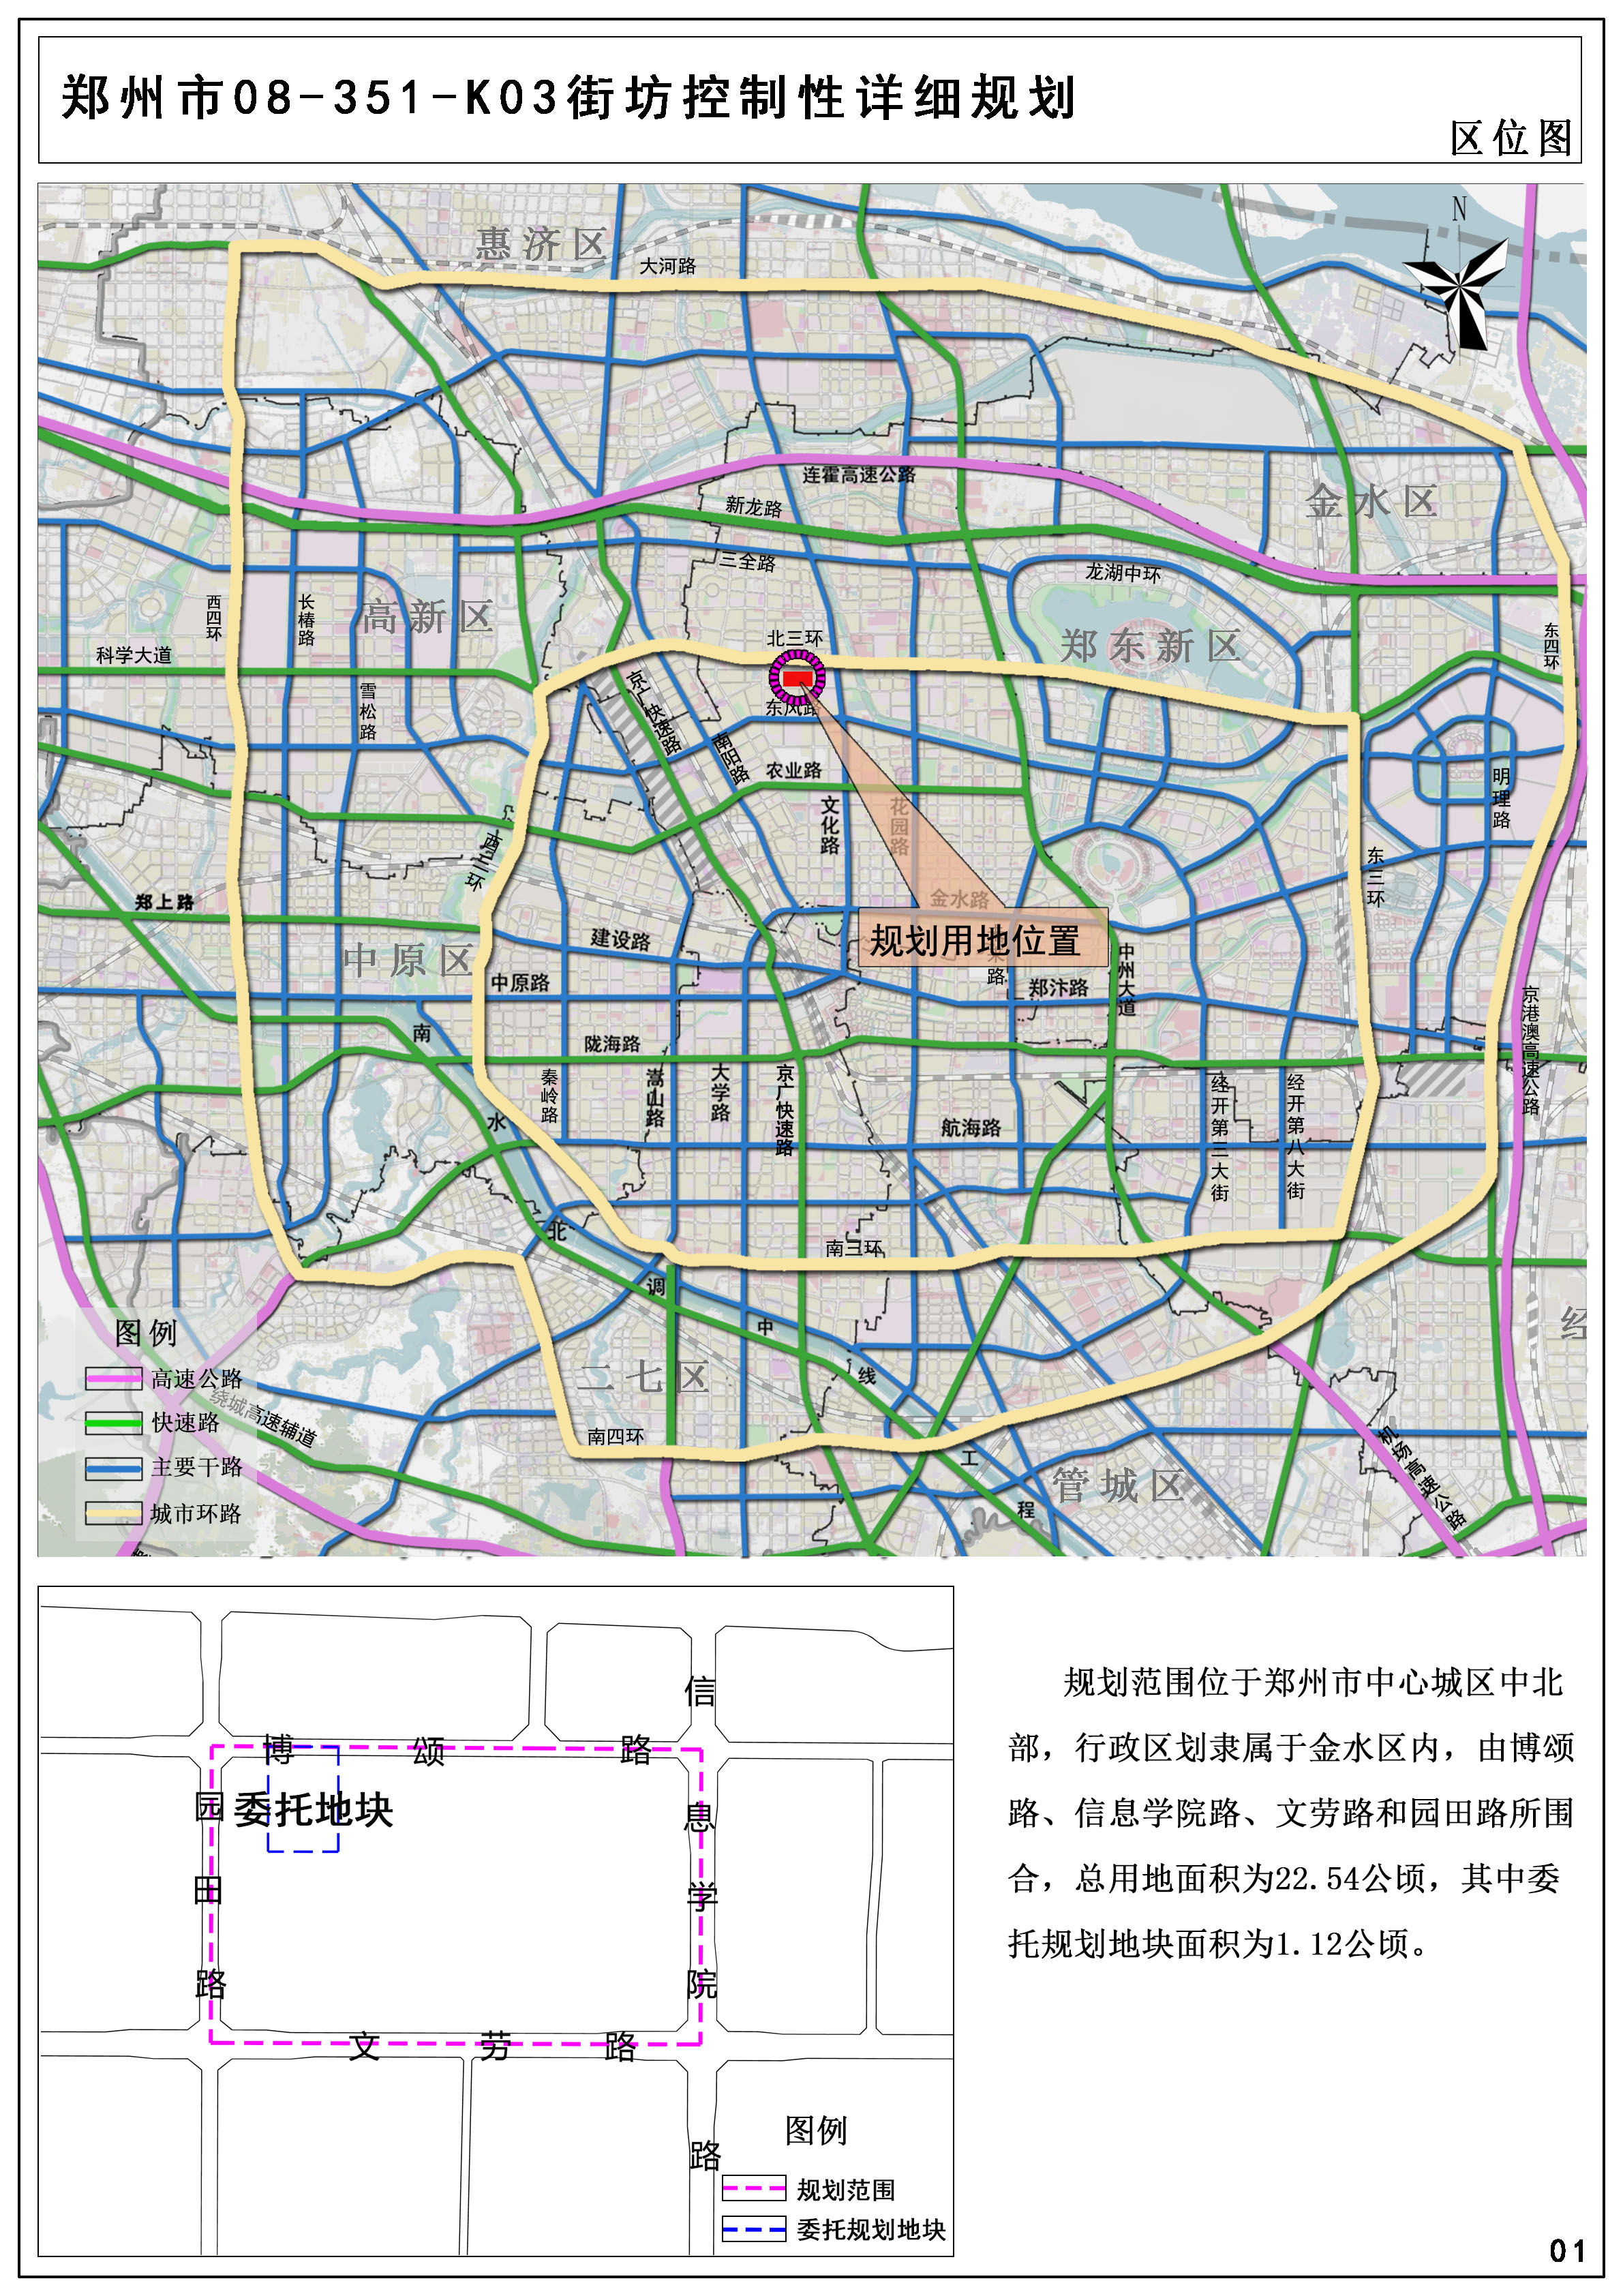 郑州市第08-351-K03街坊控制性详细规划